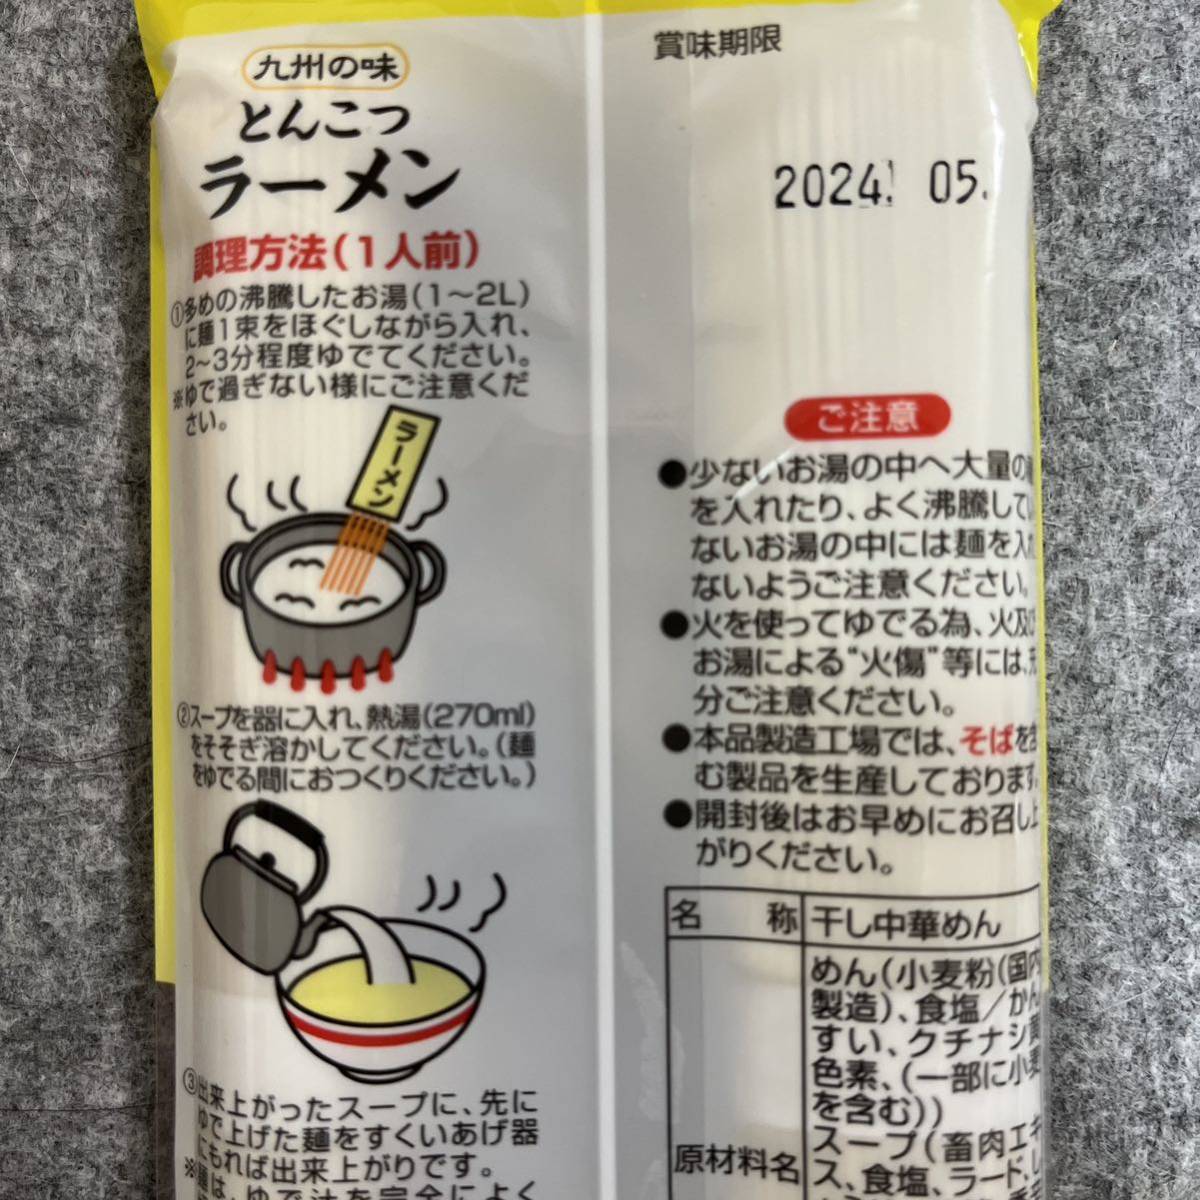 伊之助製麺 九州棒状ラーメン3種 とんこつラーメン 醤油とんこつラーメン しょうゆラーメンの画像4